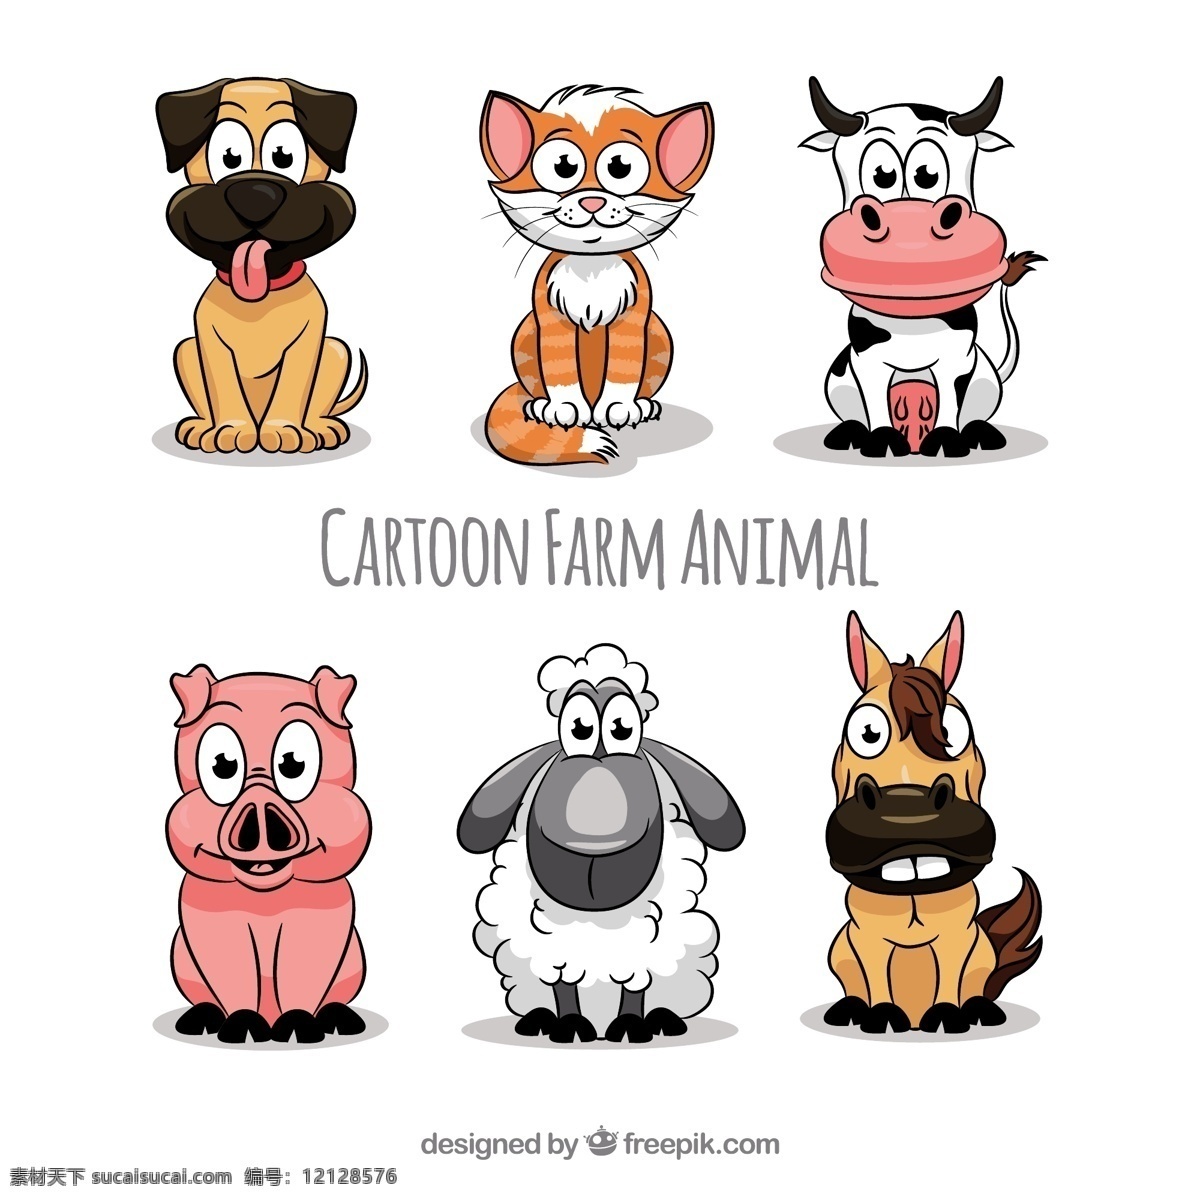 卡通 农场 动物 系列 狗 自然 猫 可爱 微笑 快乐 多彩 马 牛 猪 甜 笑脸 绵羊 有趣 酷 可爱的动物